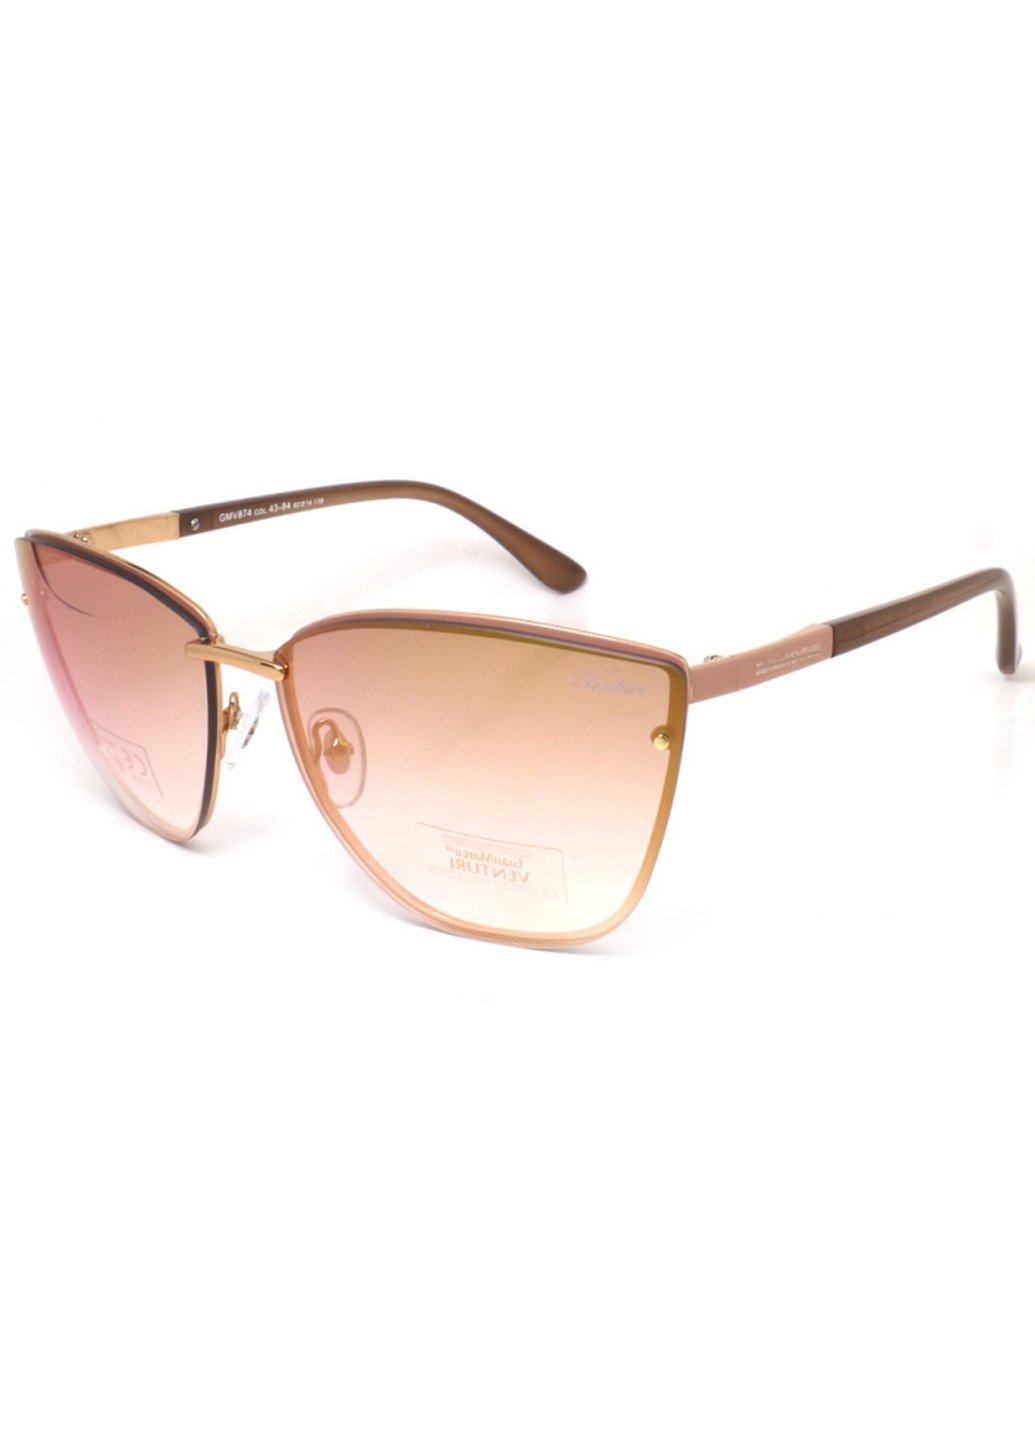 Купить Женские солнцезащитные очки Gian Marco VENTURI GMV874 130003 - Бежевый в интернет-магазине